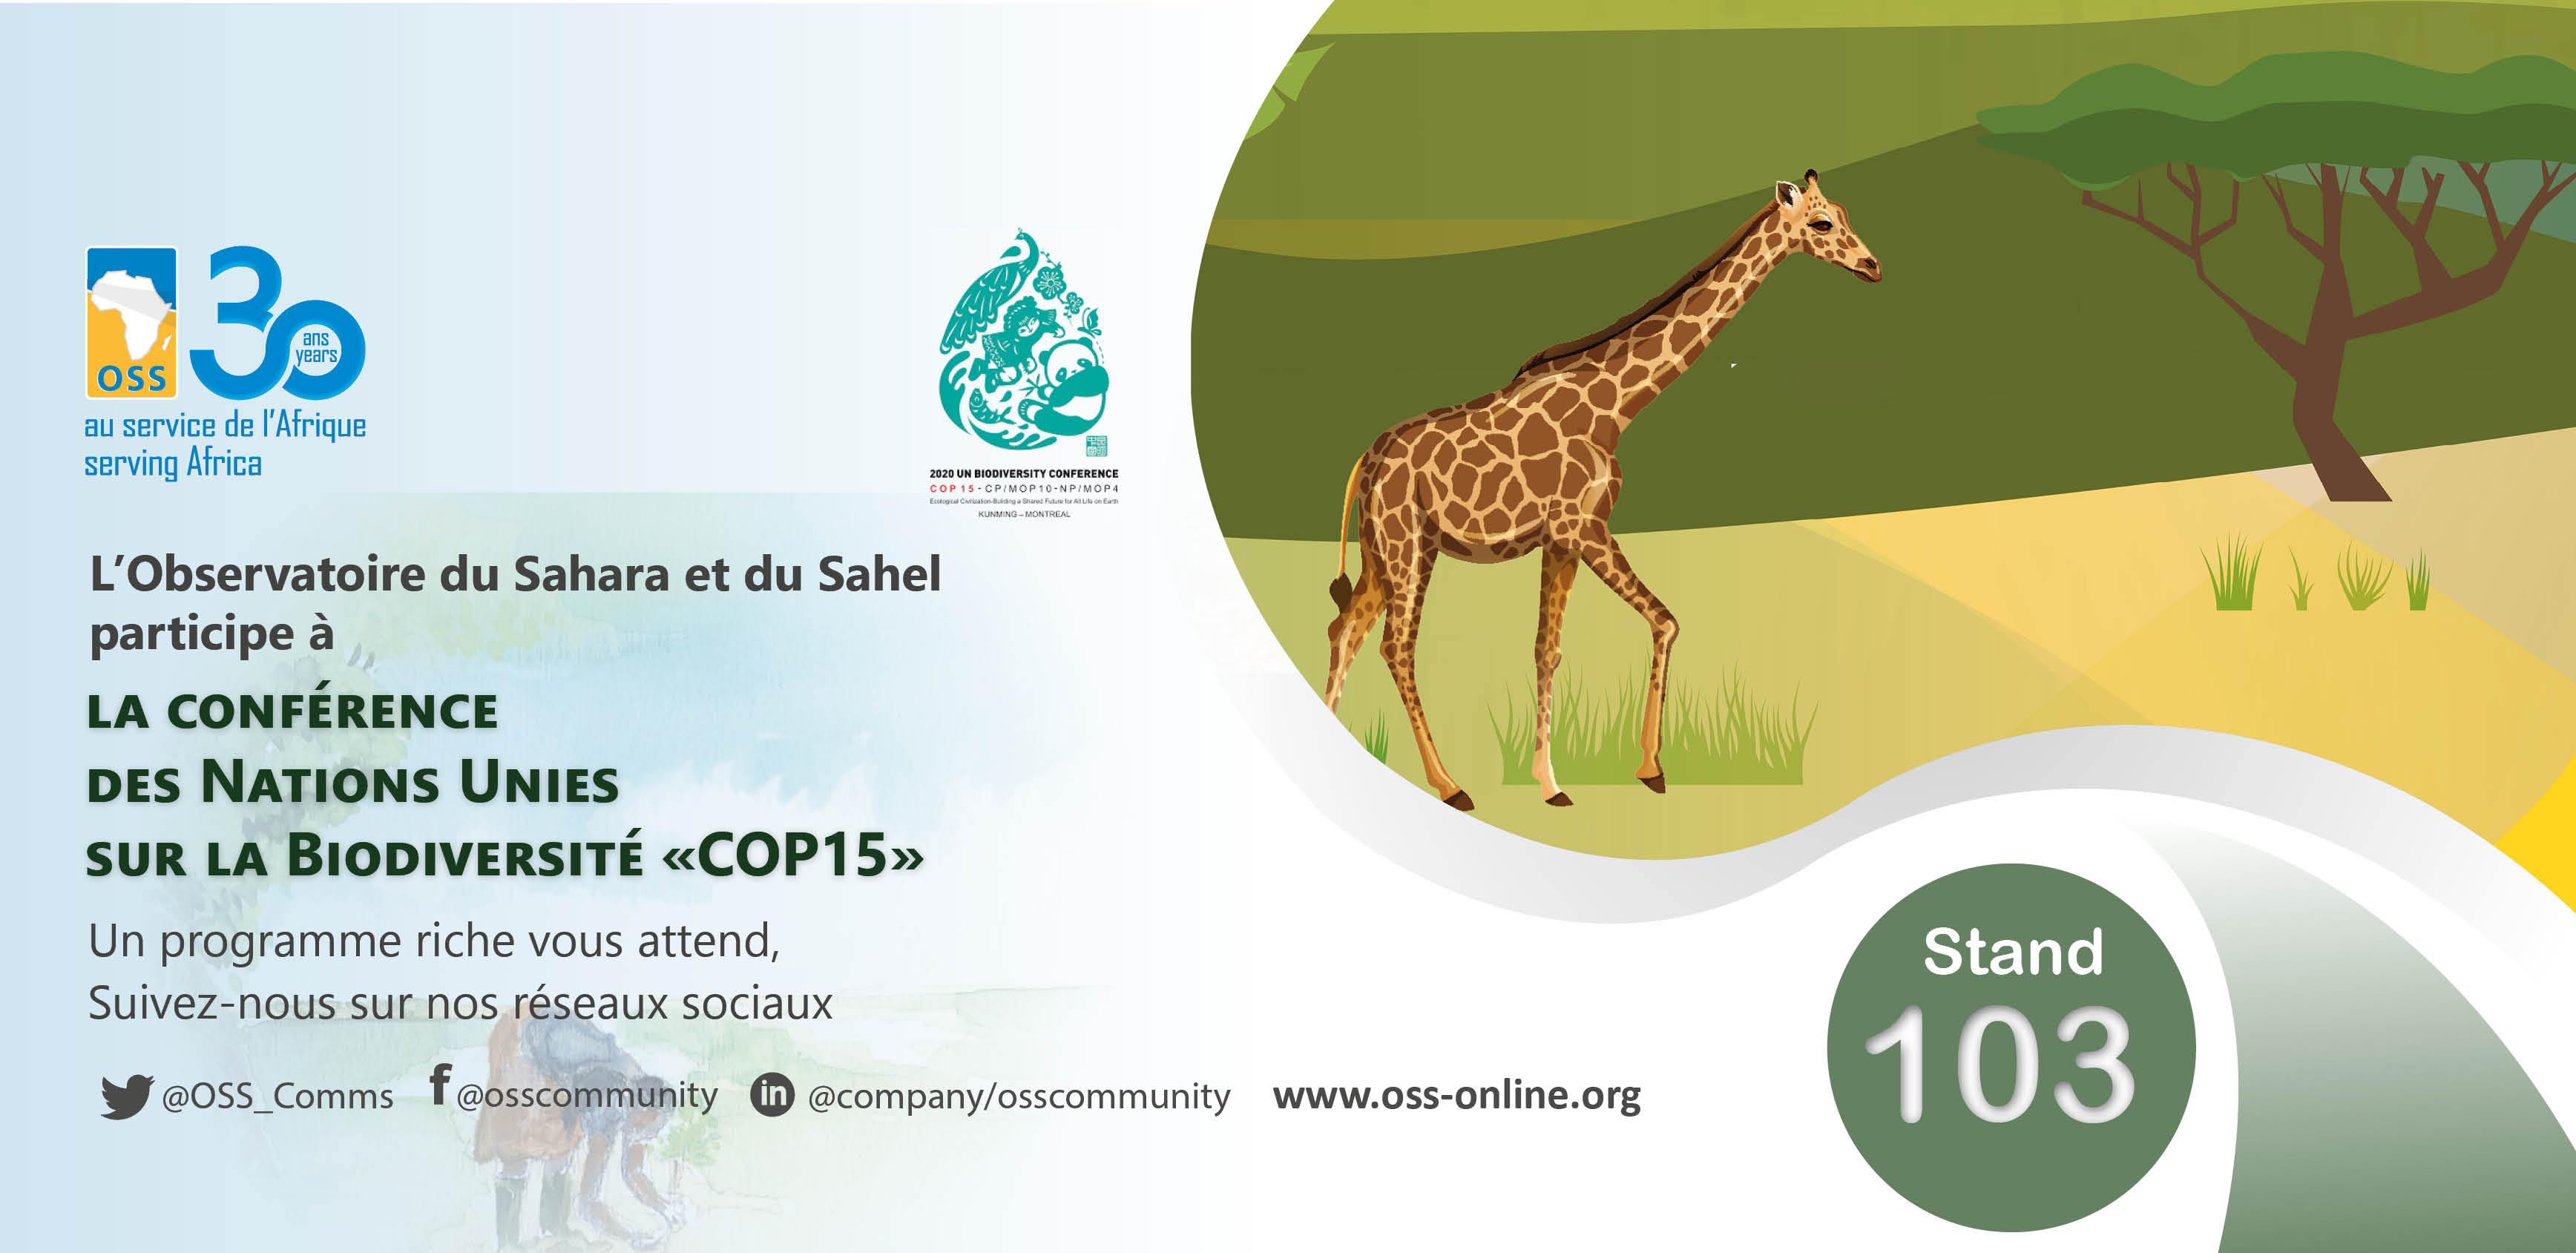  L’OSS participe à la CoP15 sur la biodiversité